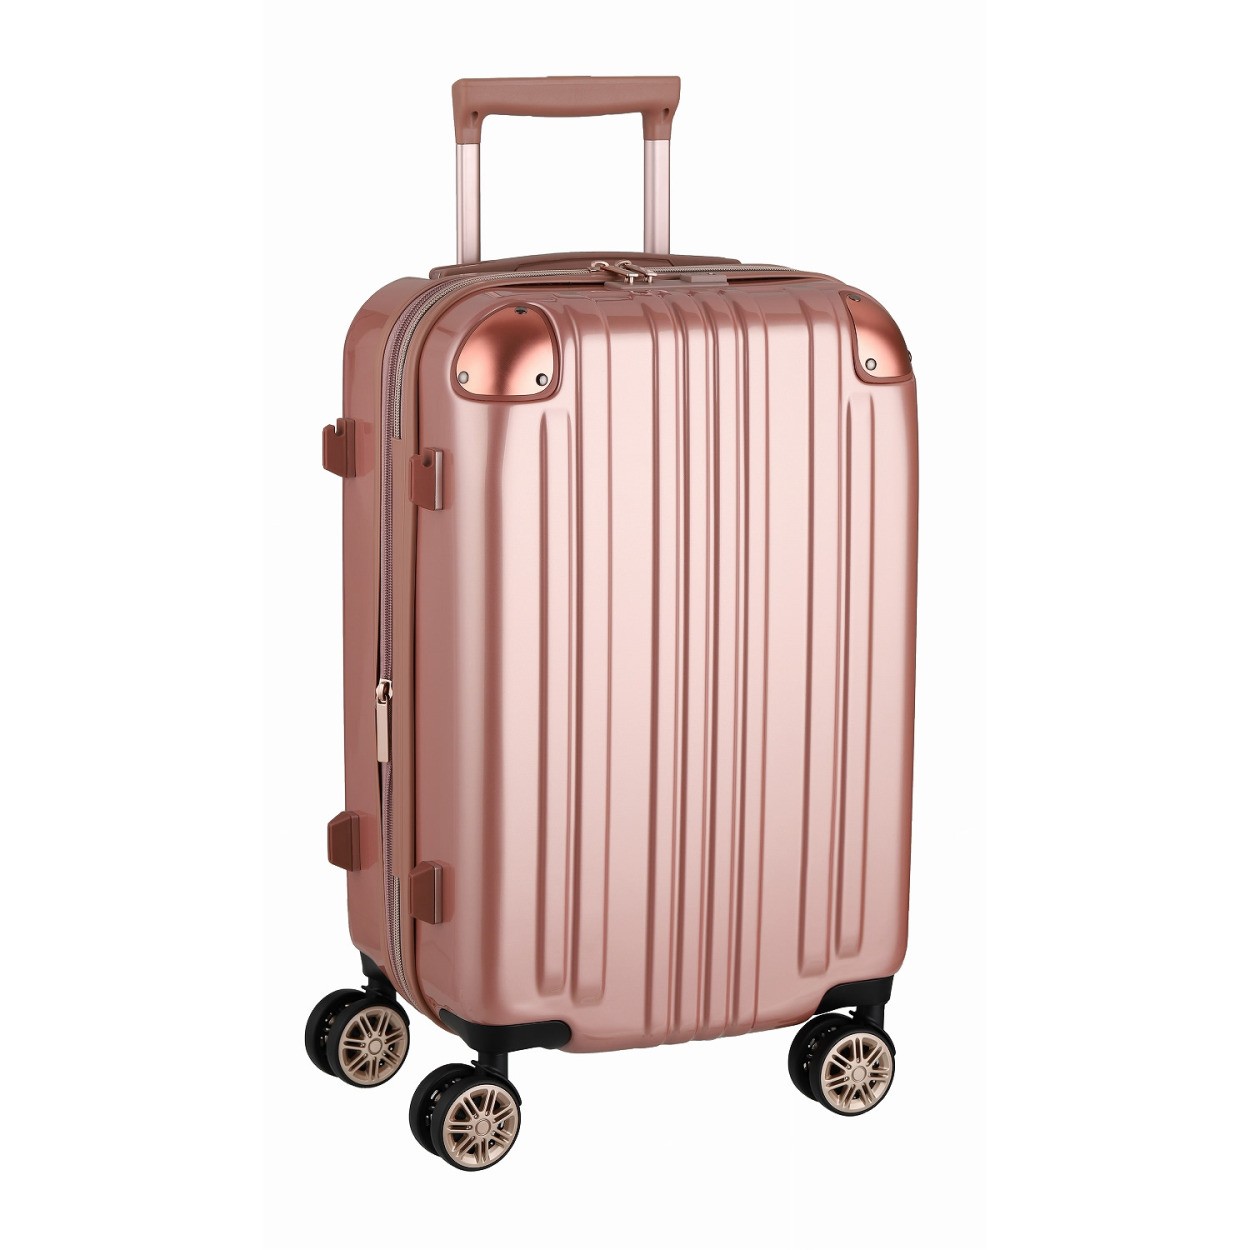 アウトレット スーツケース キャリーケース キャリーバッグ トランク 小型 軽量 Sサイズ おしゃれ 静音 ハード ファスナー 拡張 B-5122-55